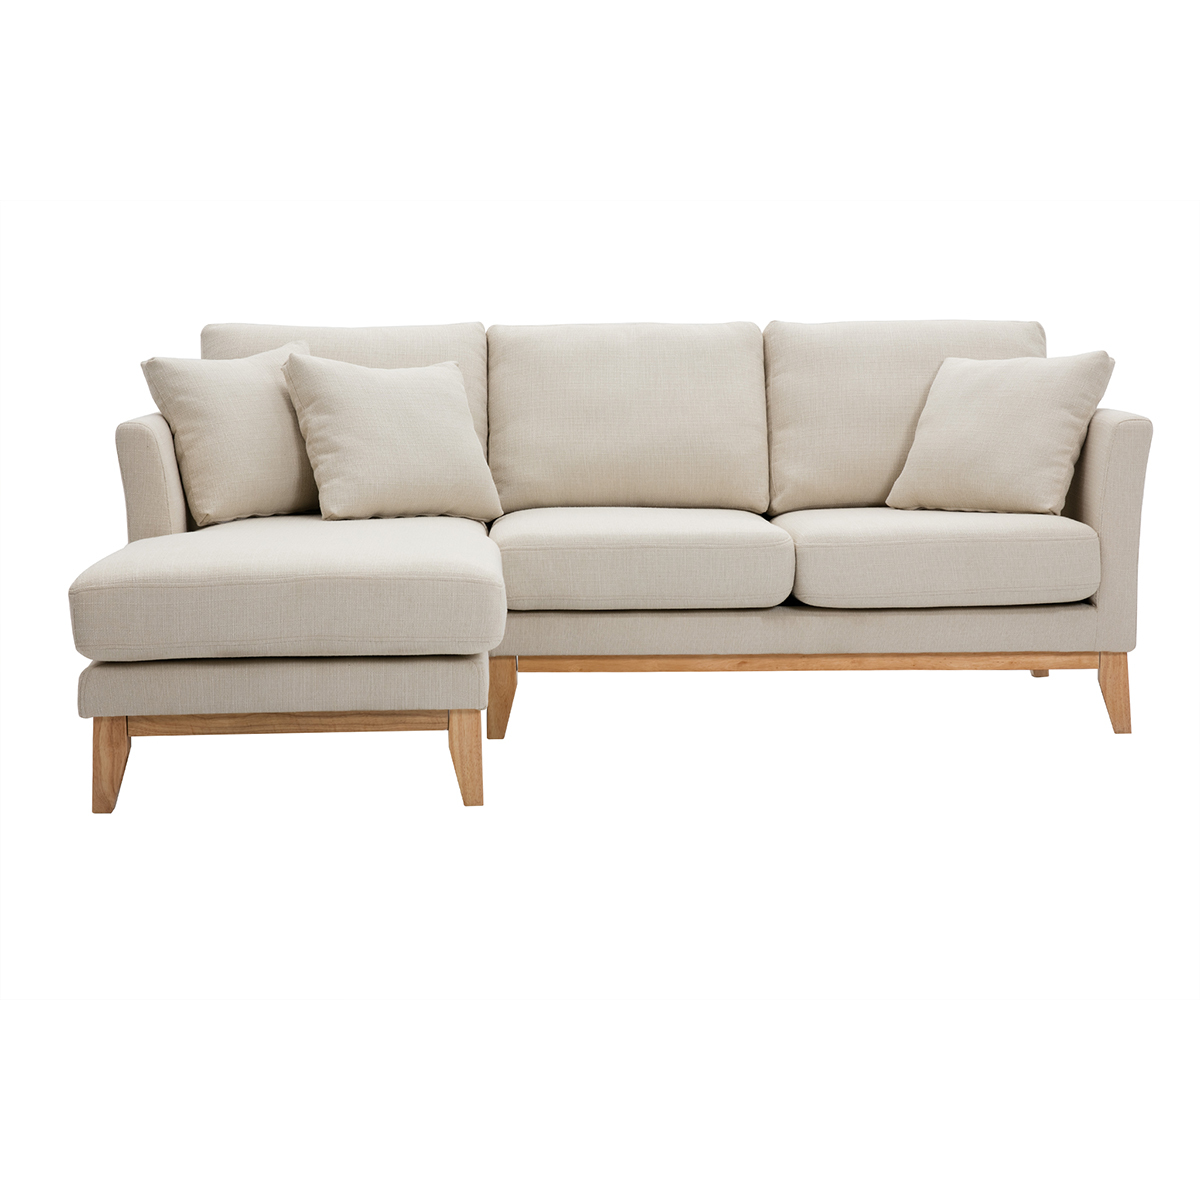 Canapé d'angle gauche scandinave en tissu beige déhoussable et bois clair 3-4 places OSLO